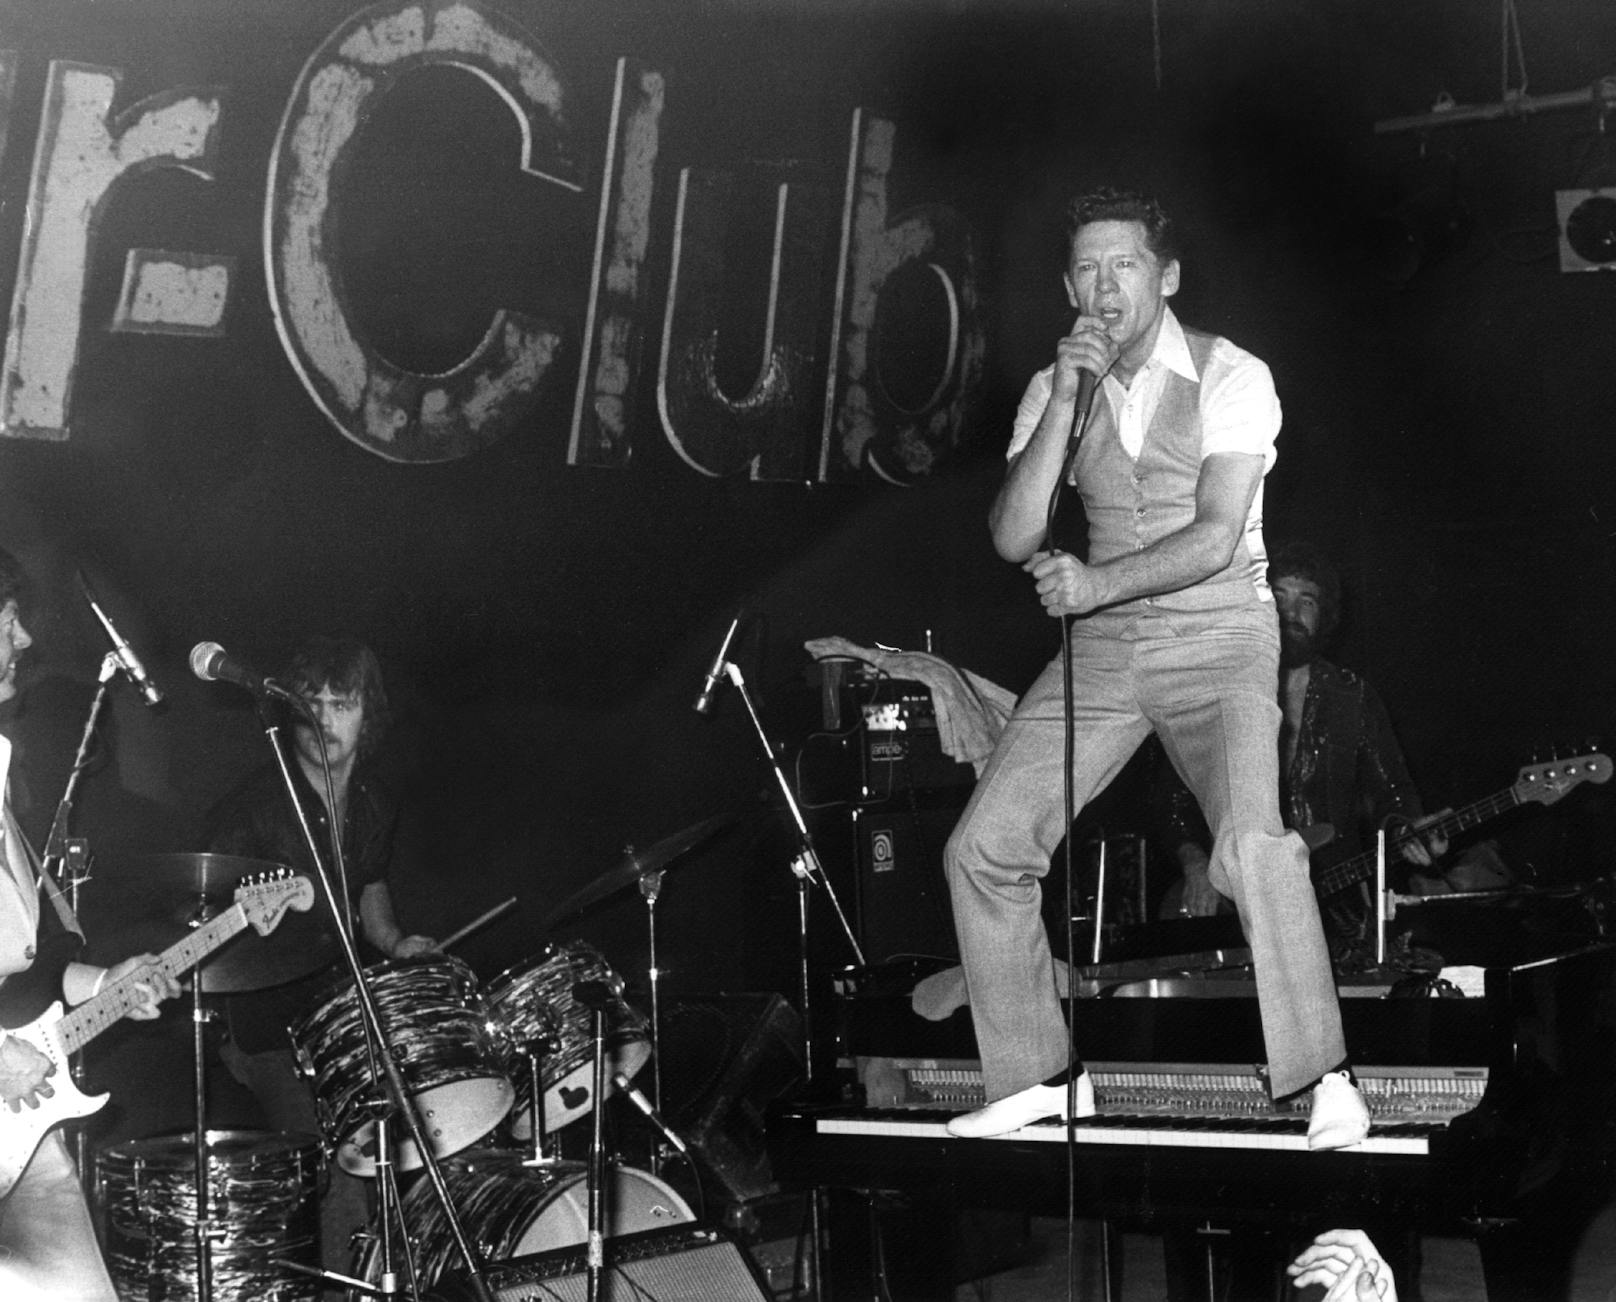 Der amerikanische Rock-Musiker Jerry Lee Lewis bei einem Auftritt&nbsp; im Hamburger Star-Club 1980.